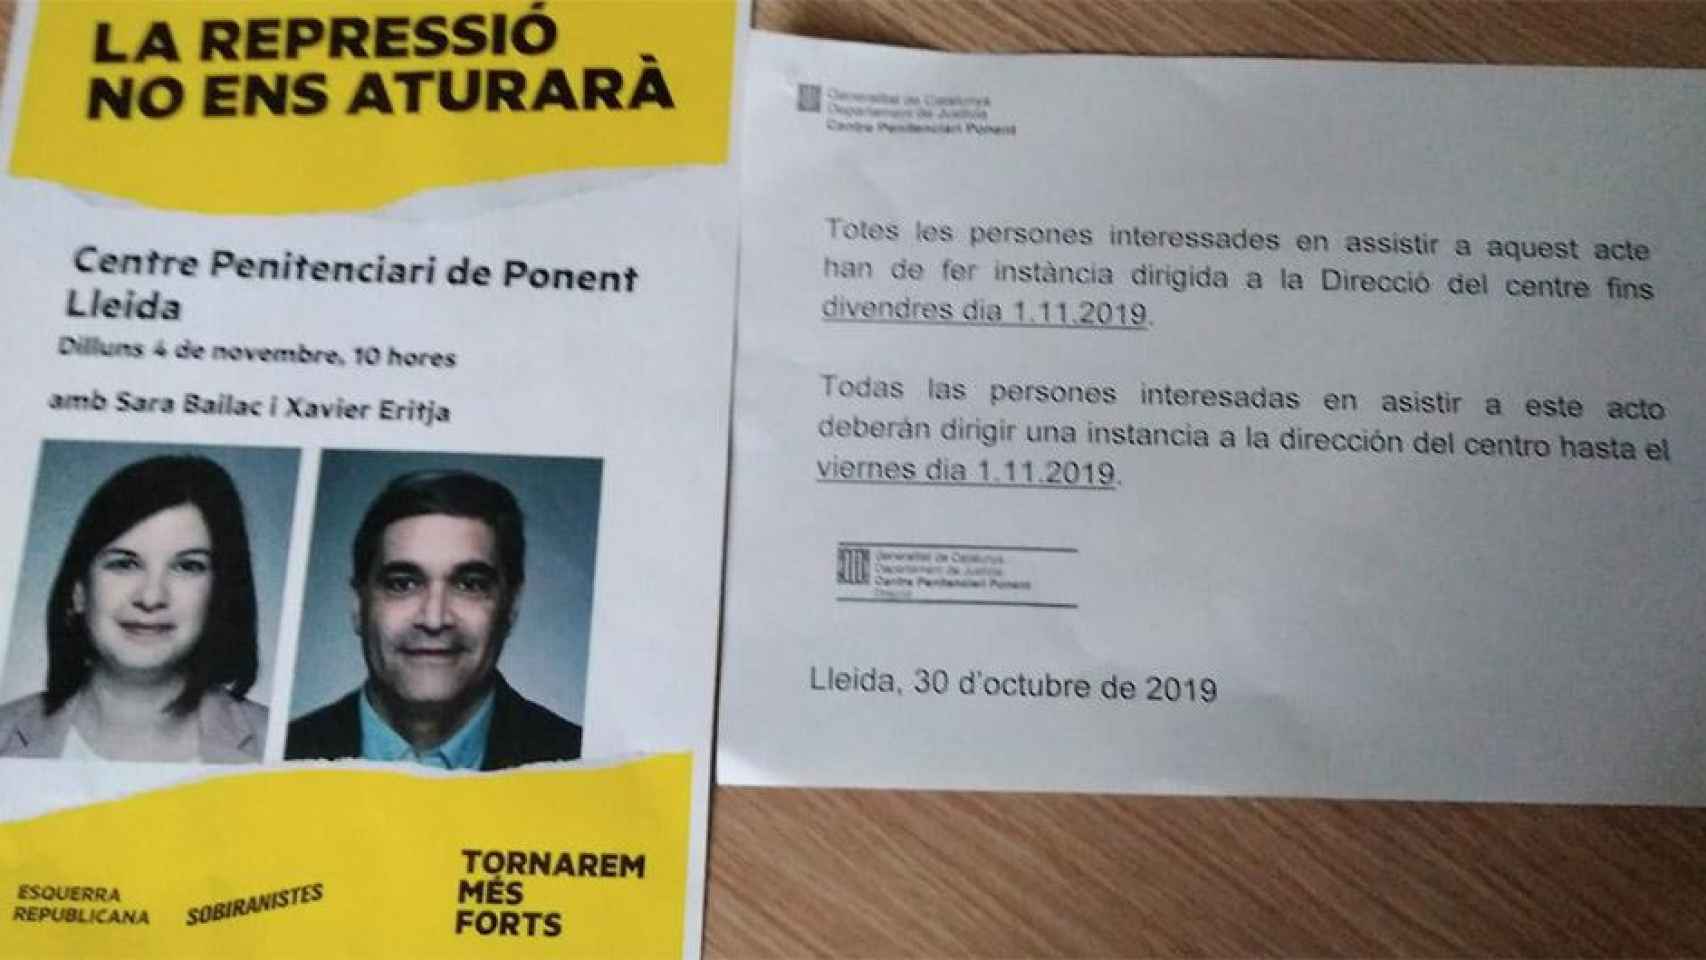 Cartel del mitin de ERC en la cárcel de Lleida y la circular de la Consejería de Justicia en la que insta a inscribirse / CG